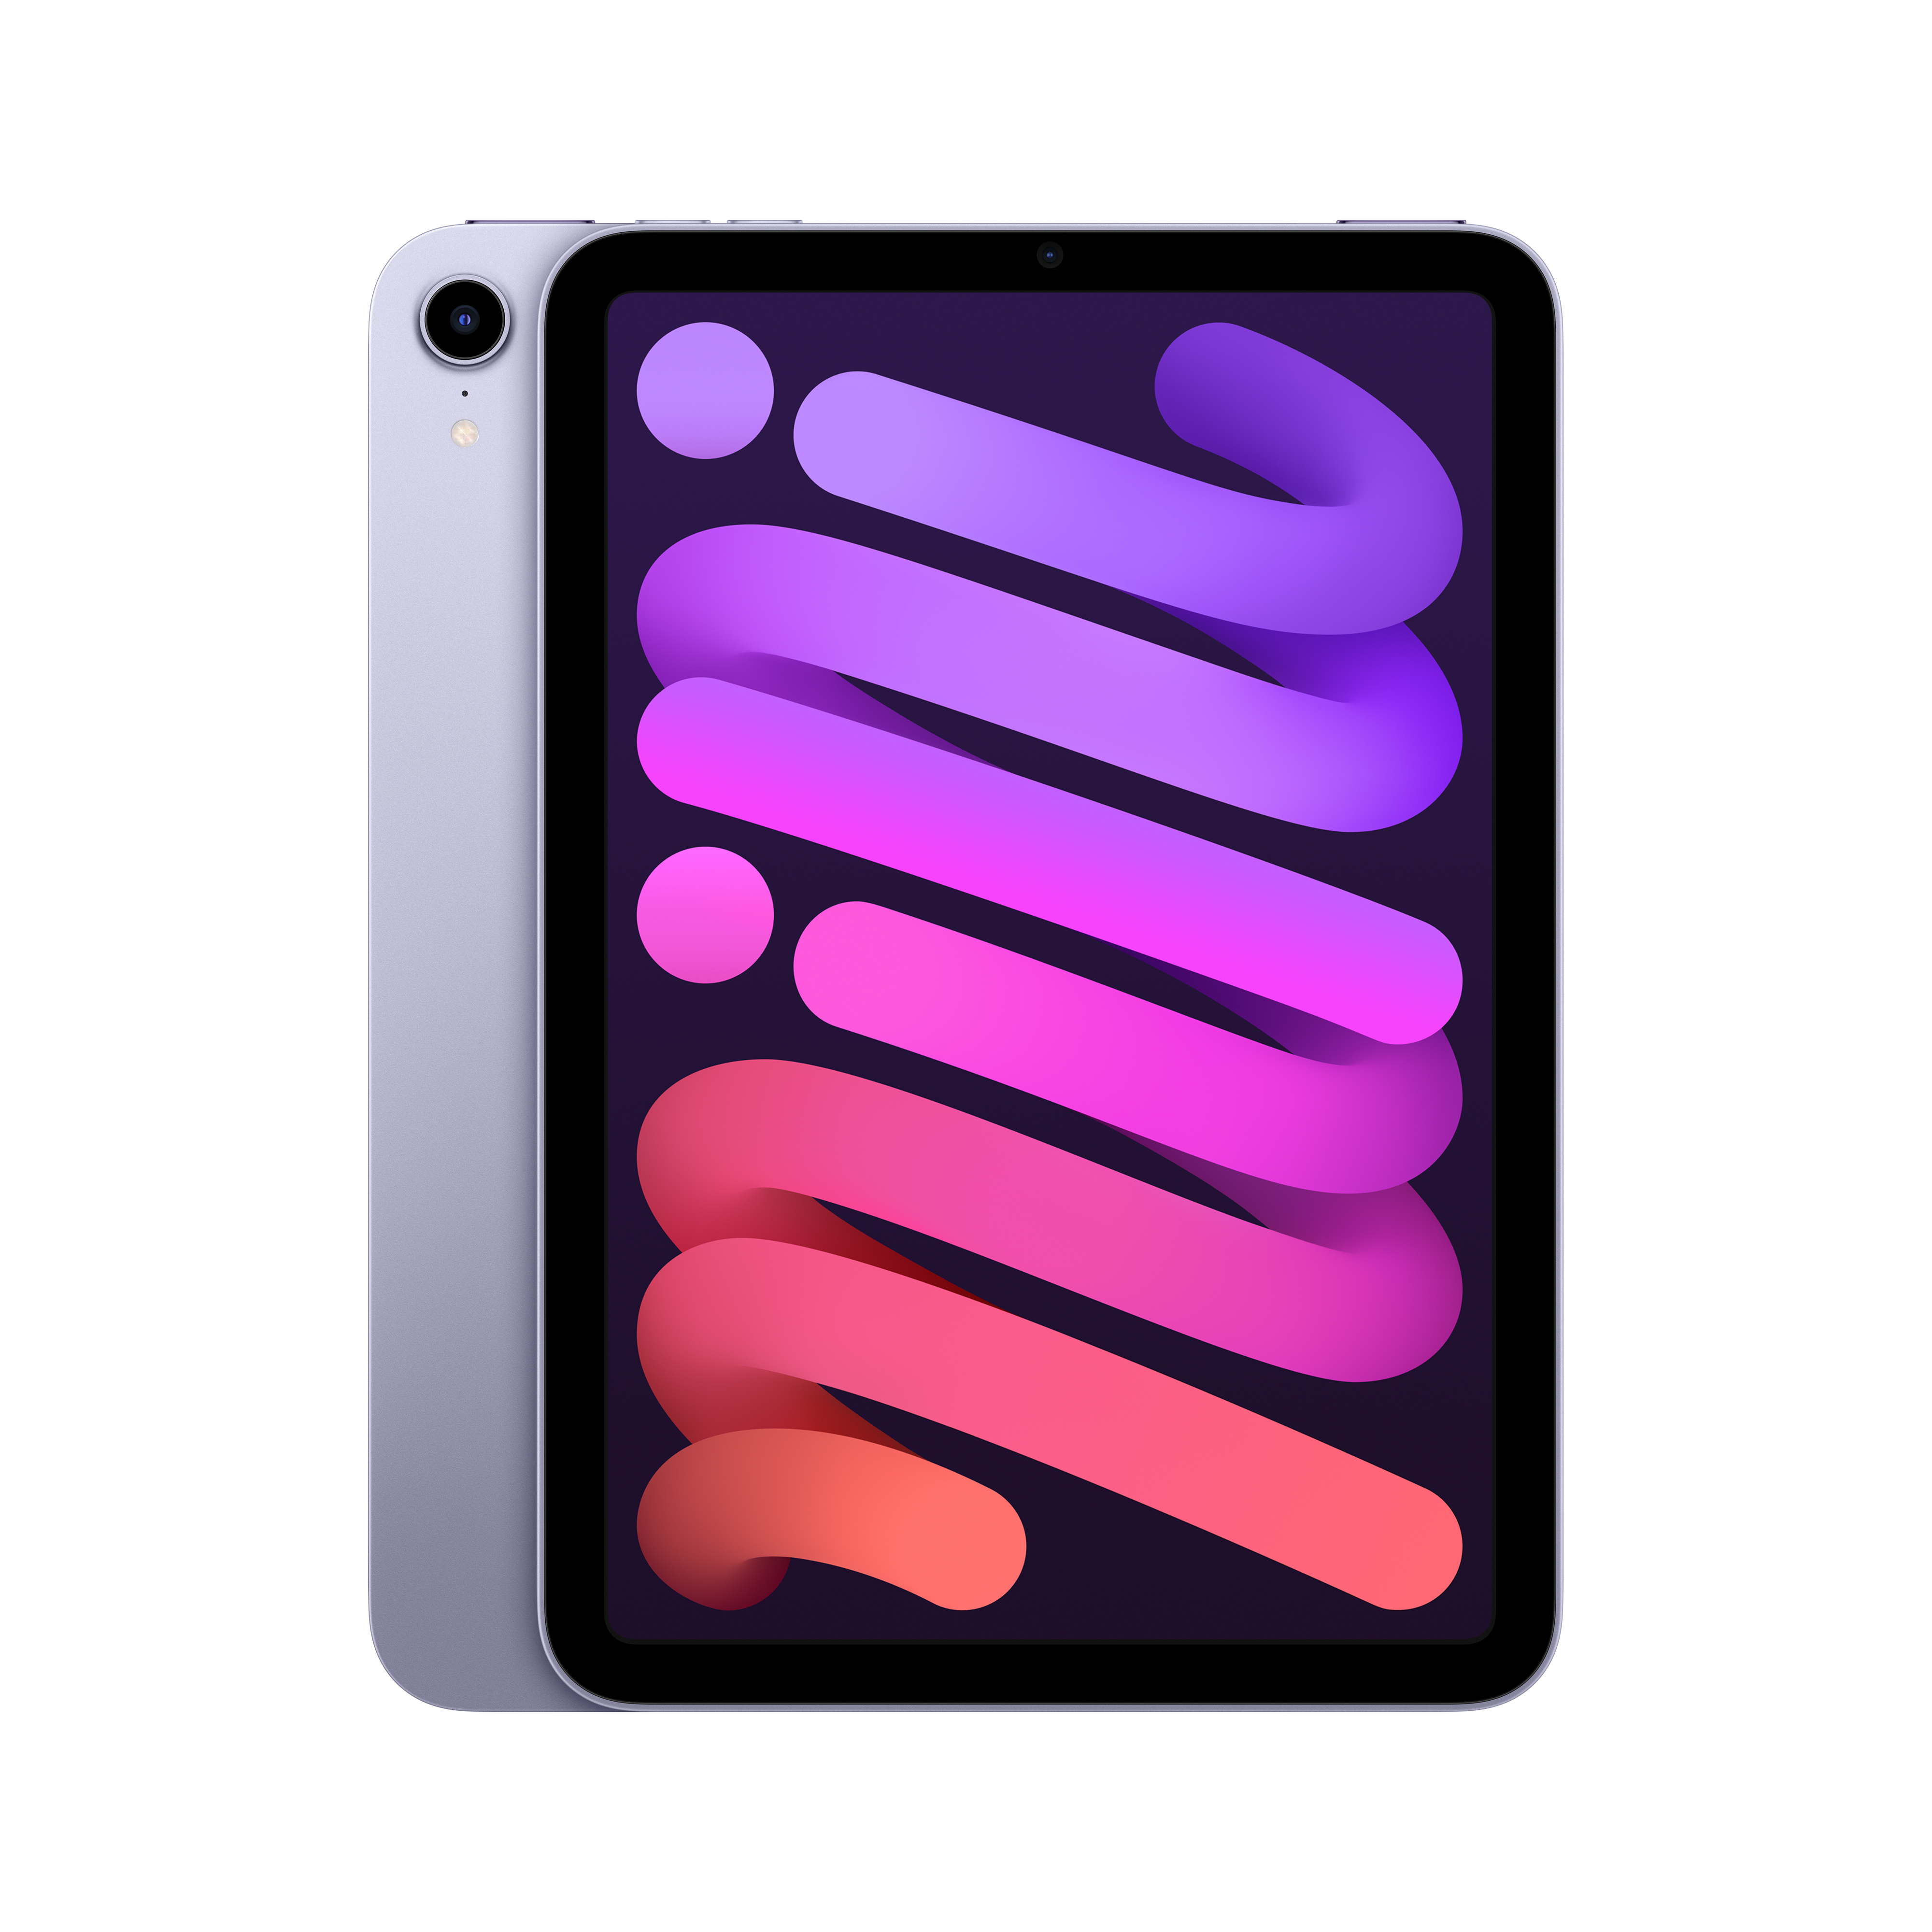 iPad_mini_Q421_Wi-Fi_Purple_PDP_Image_Position-1b__ru-RU